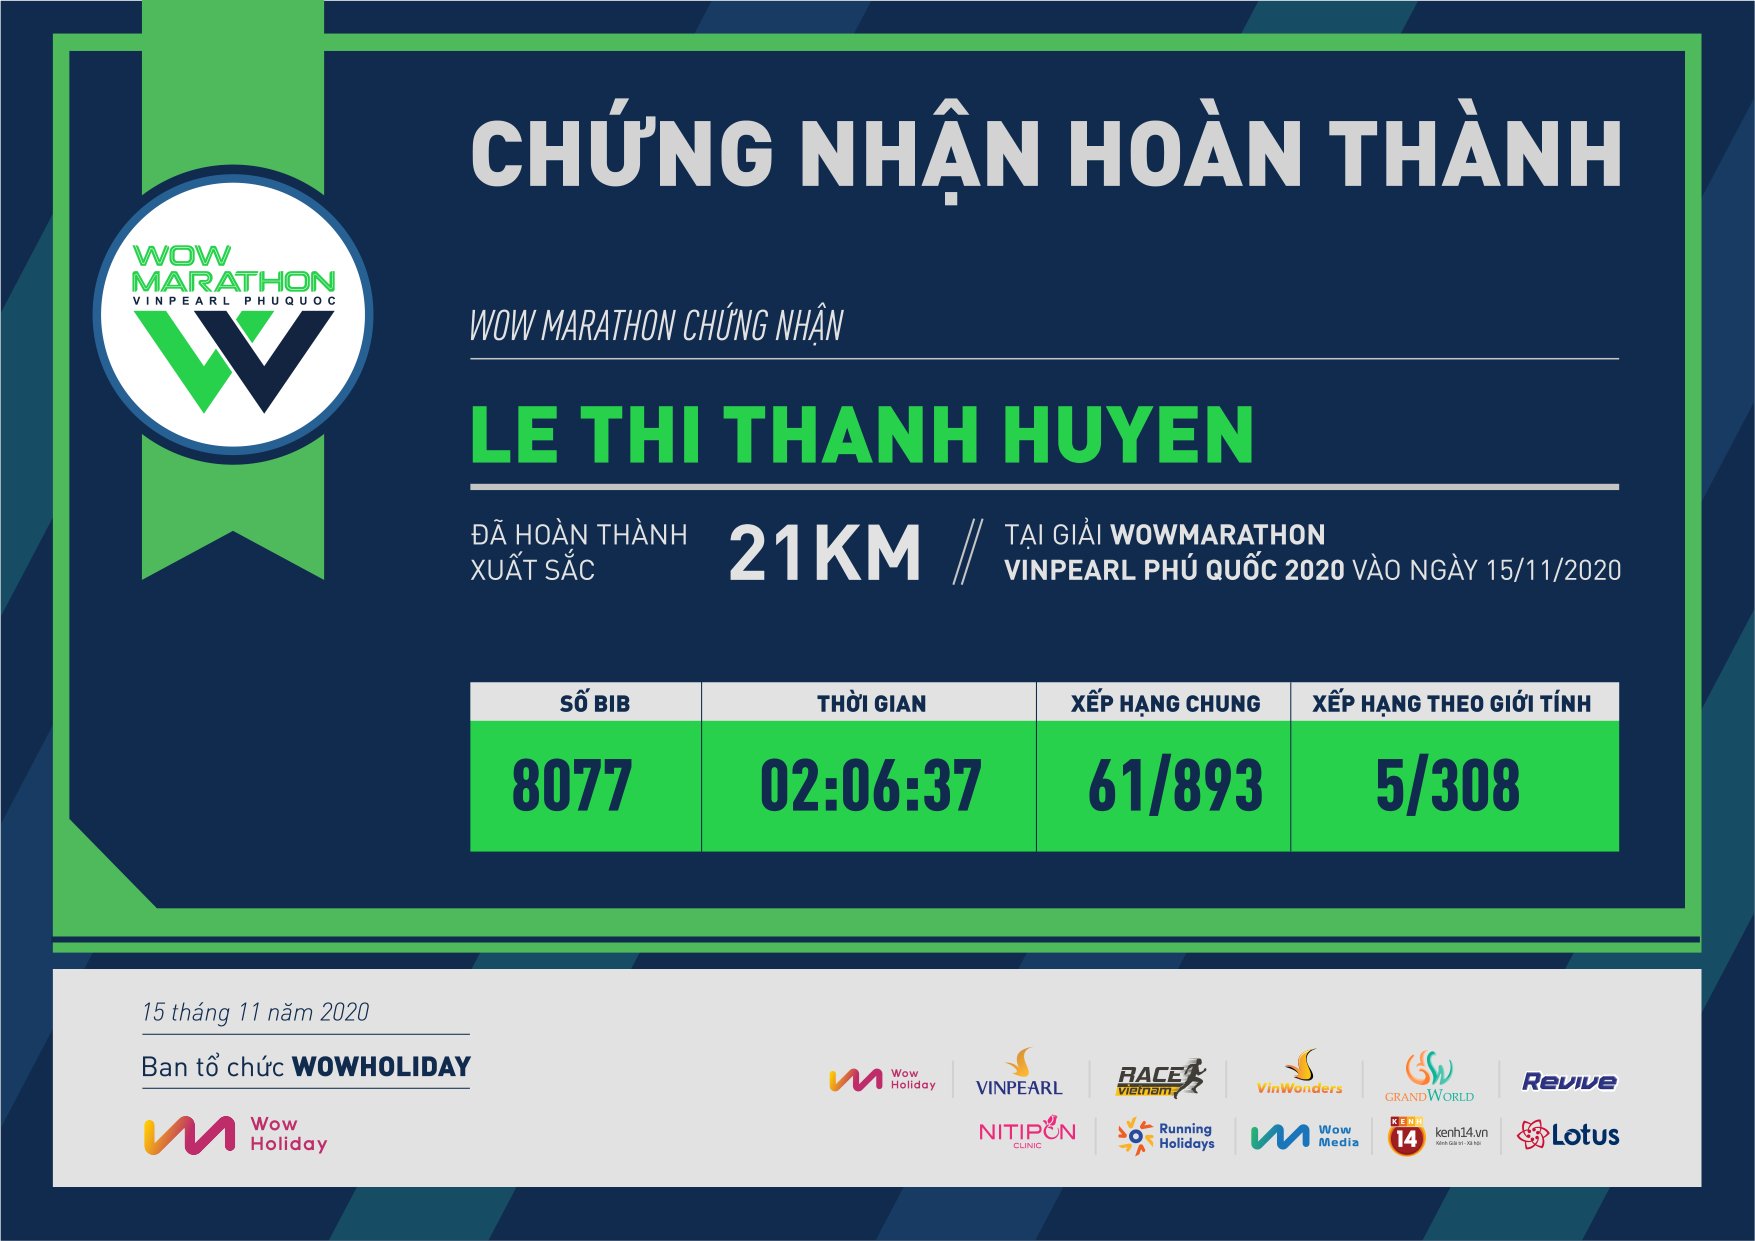 8077 - Le Thi Thanh Huyen